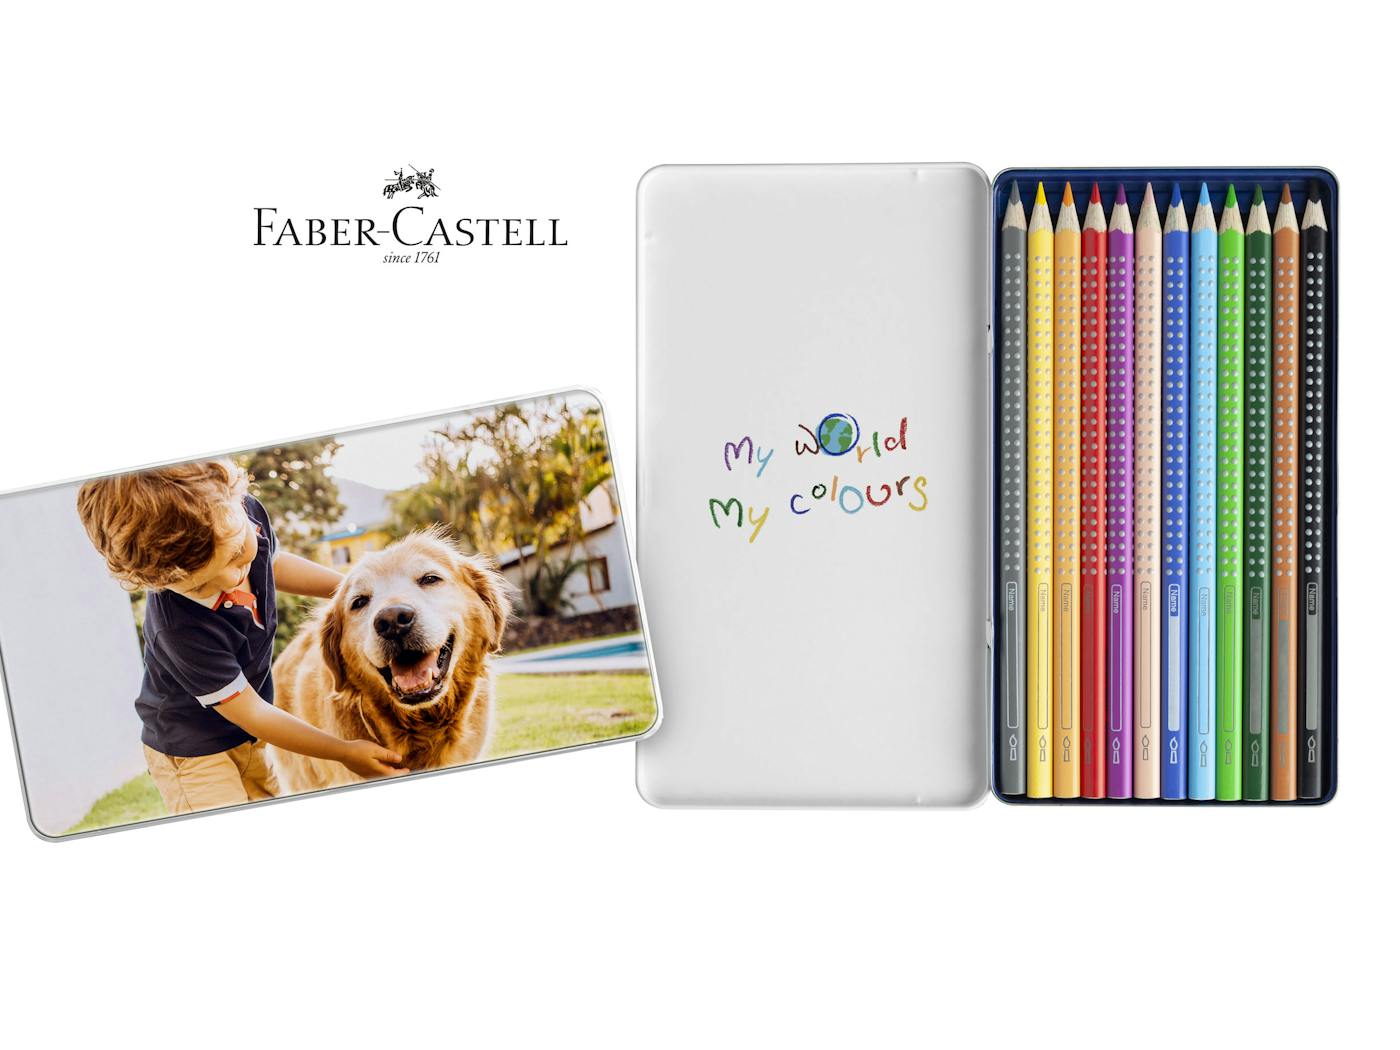 Voici comment cr�er votre boite Faber-Castell avec photo